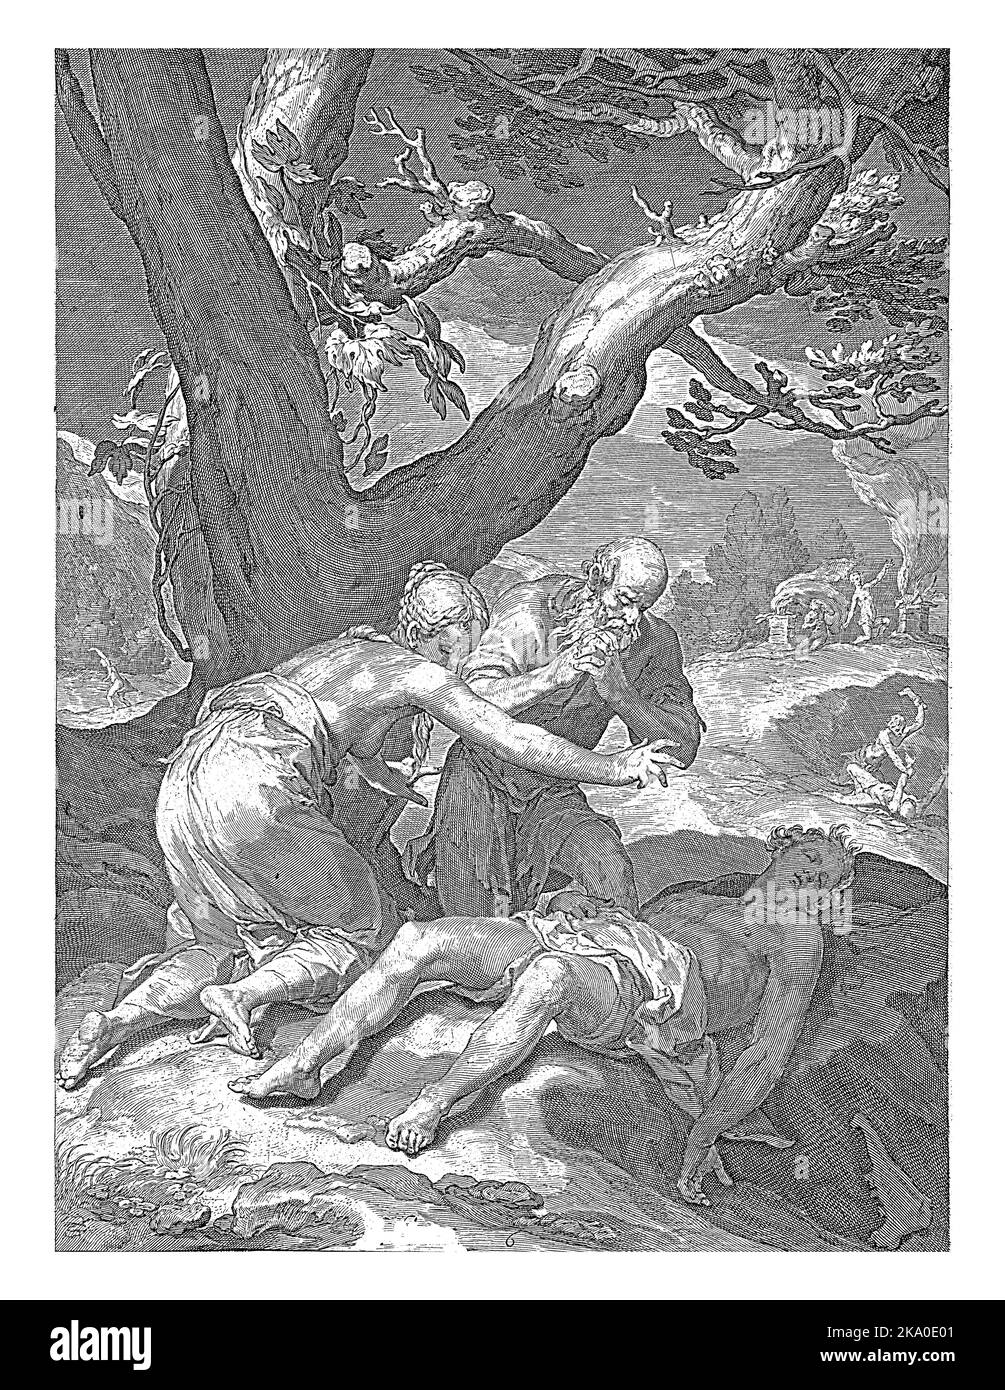 Adamo ed Eva trovano Abele morto nel sito sacrificale. Entrambi sono in ginocchio davanti al cadavere e al lutto del figlio. Foto Stock